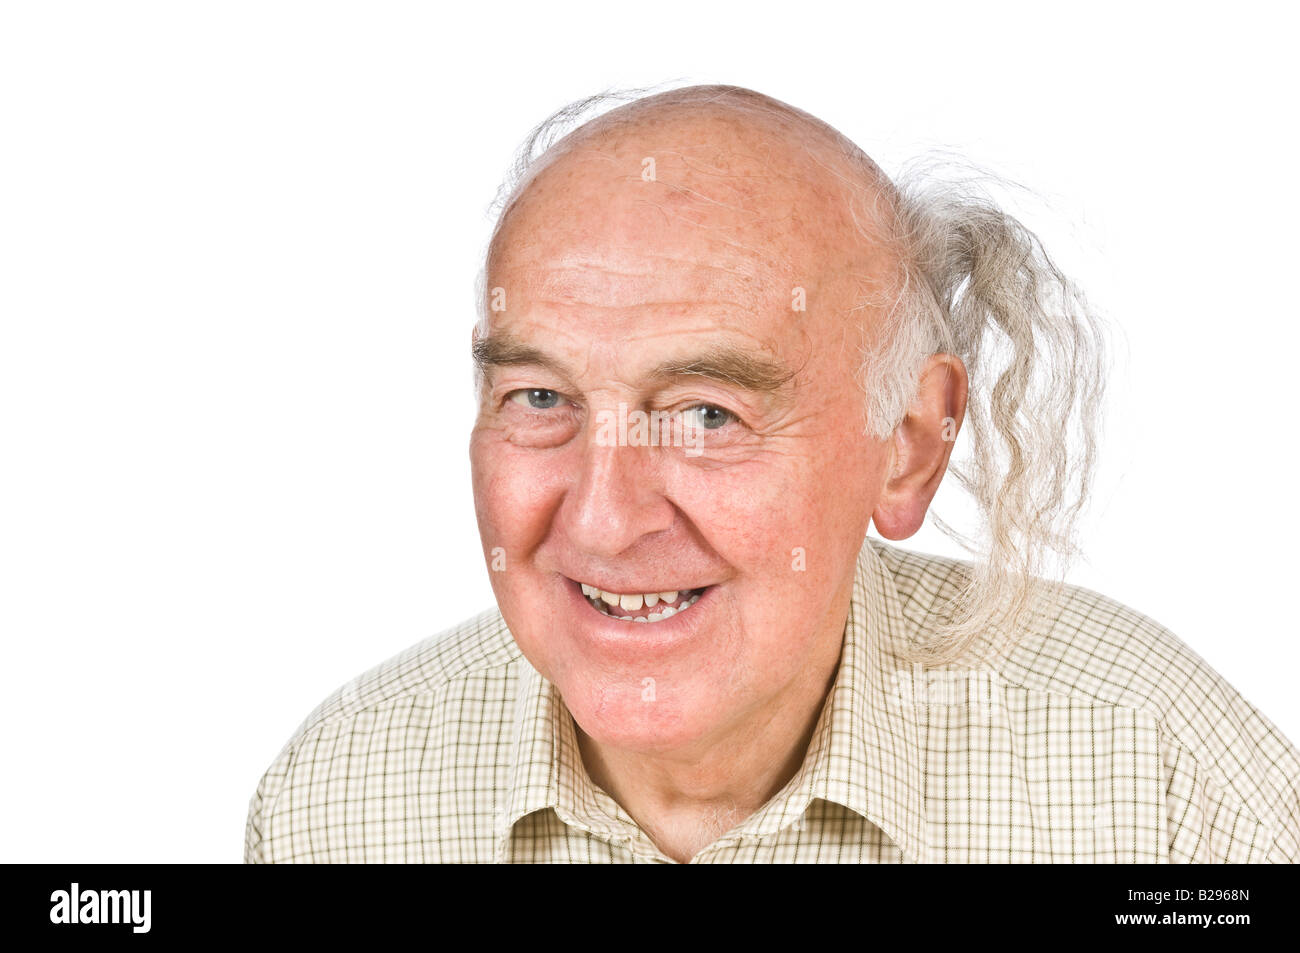 Un uomo anziano visualizzando il suo "comb-over' per coprire la sua balding testa contro un bianco puro (255) dello sfondo. Foto Stock